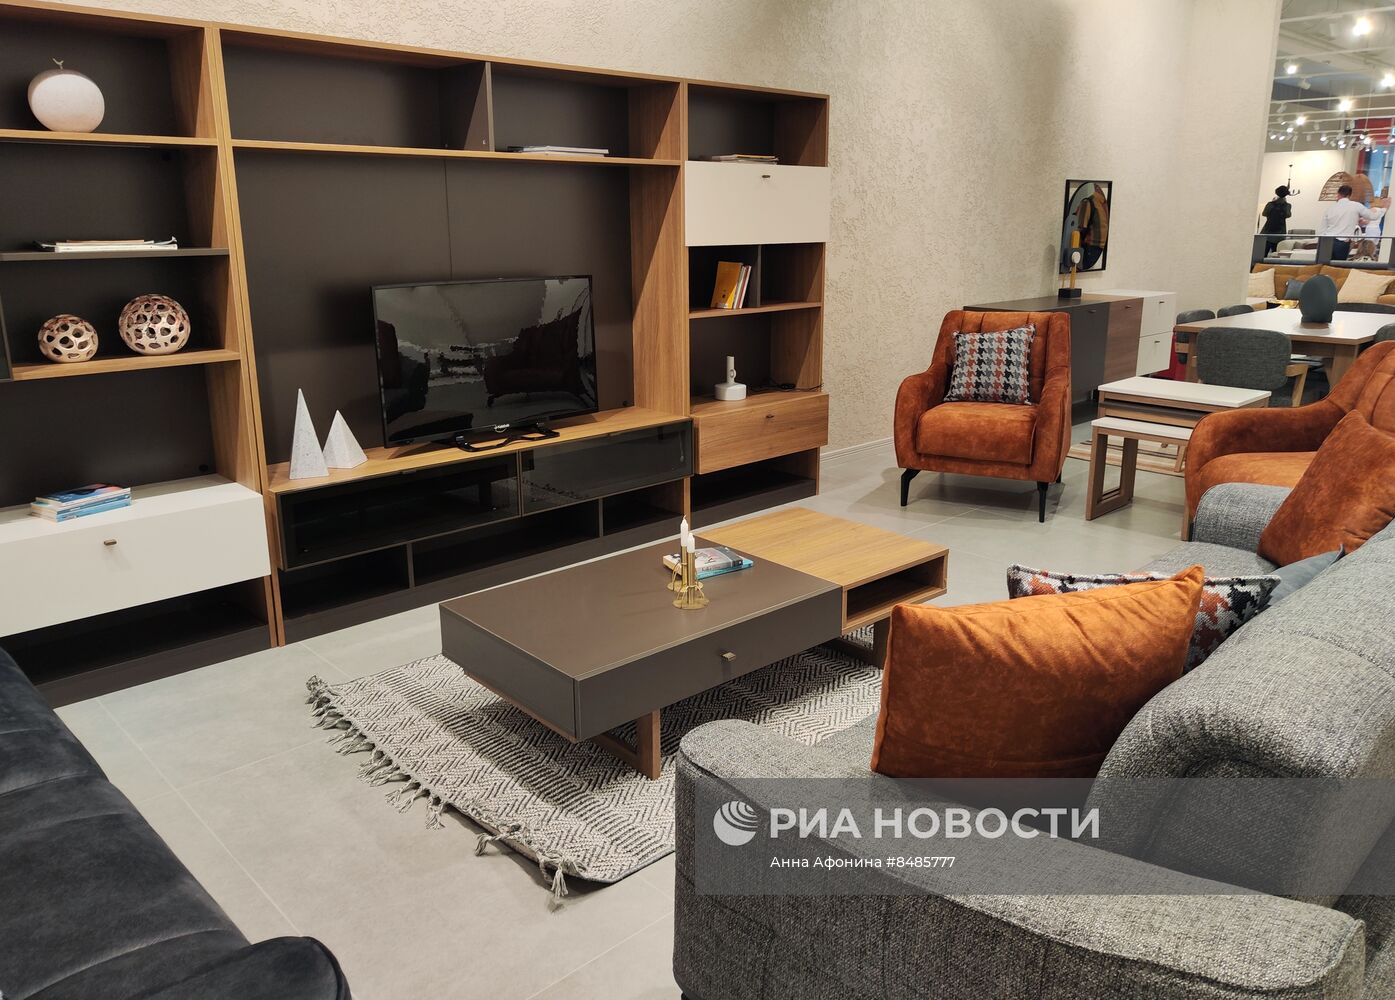 Первый в России турецкий магазин мебели Kelebek открылся в Москве